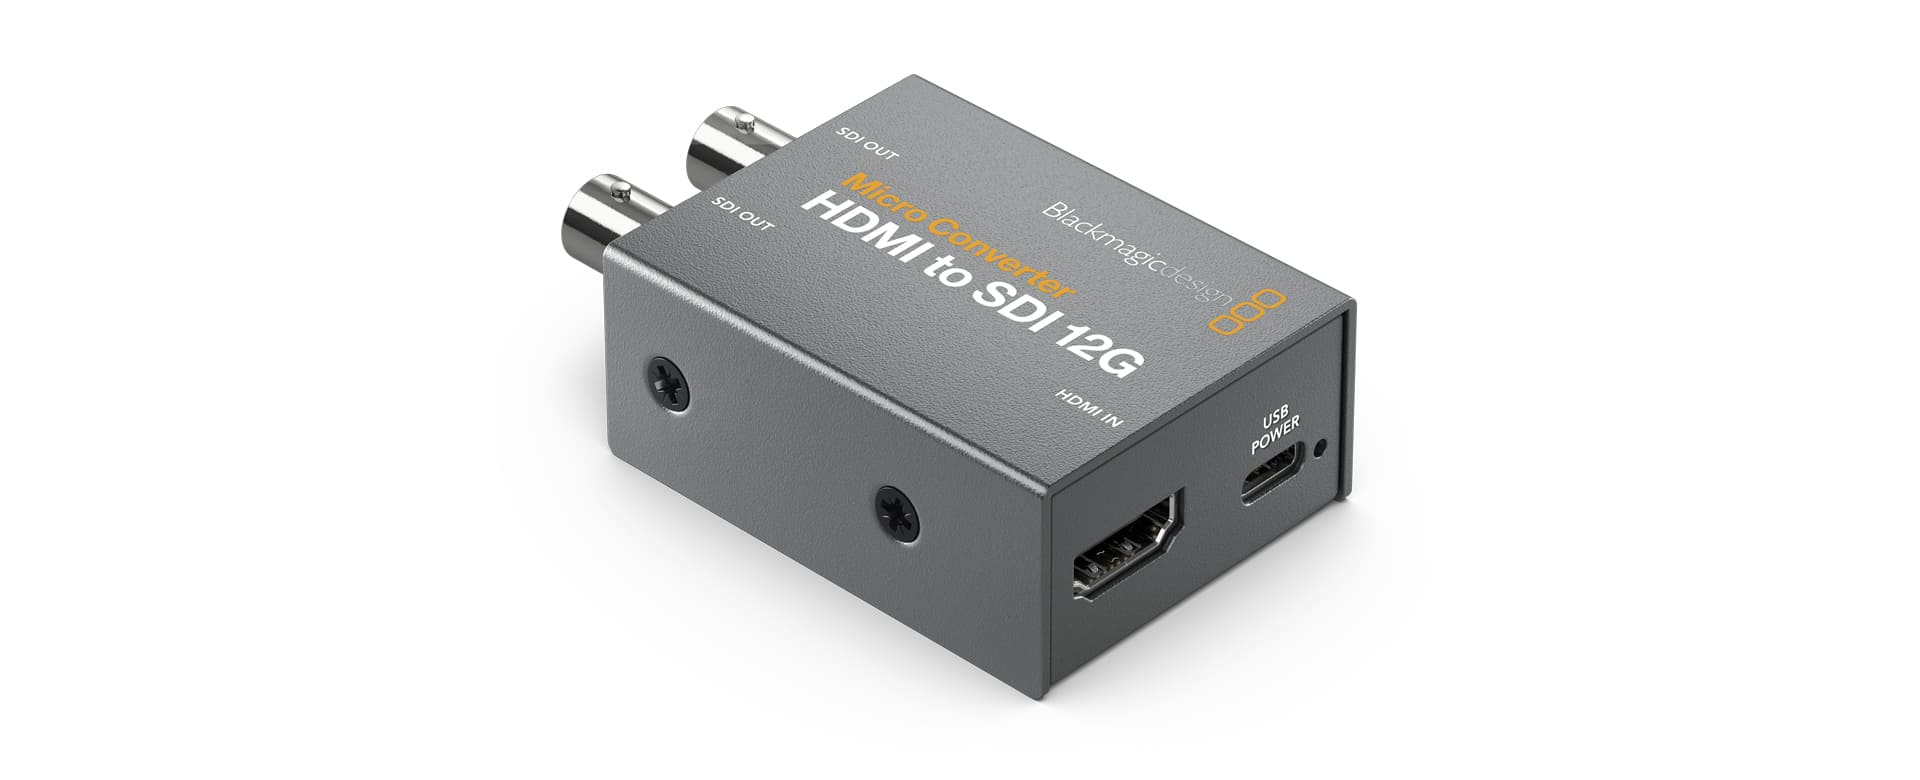 Micro Converter HDMI to SDI wPSU